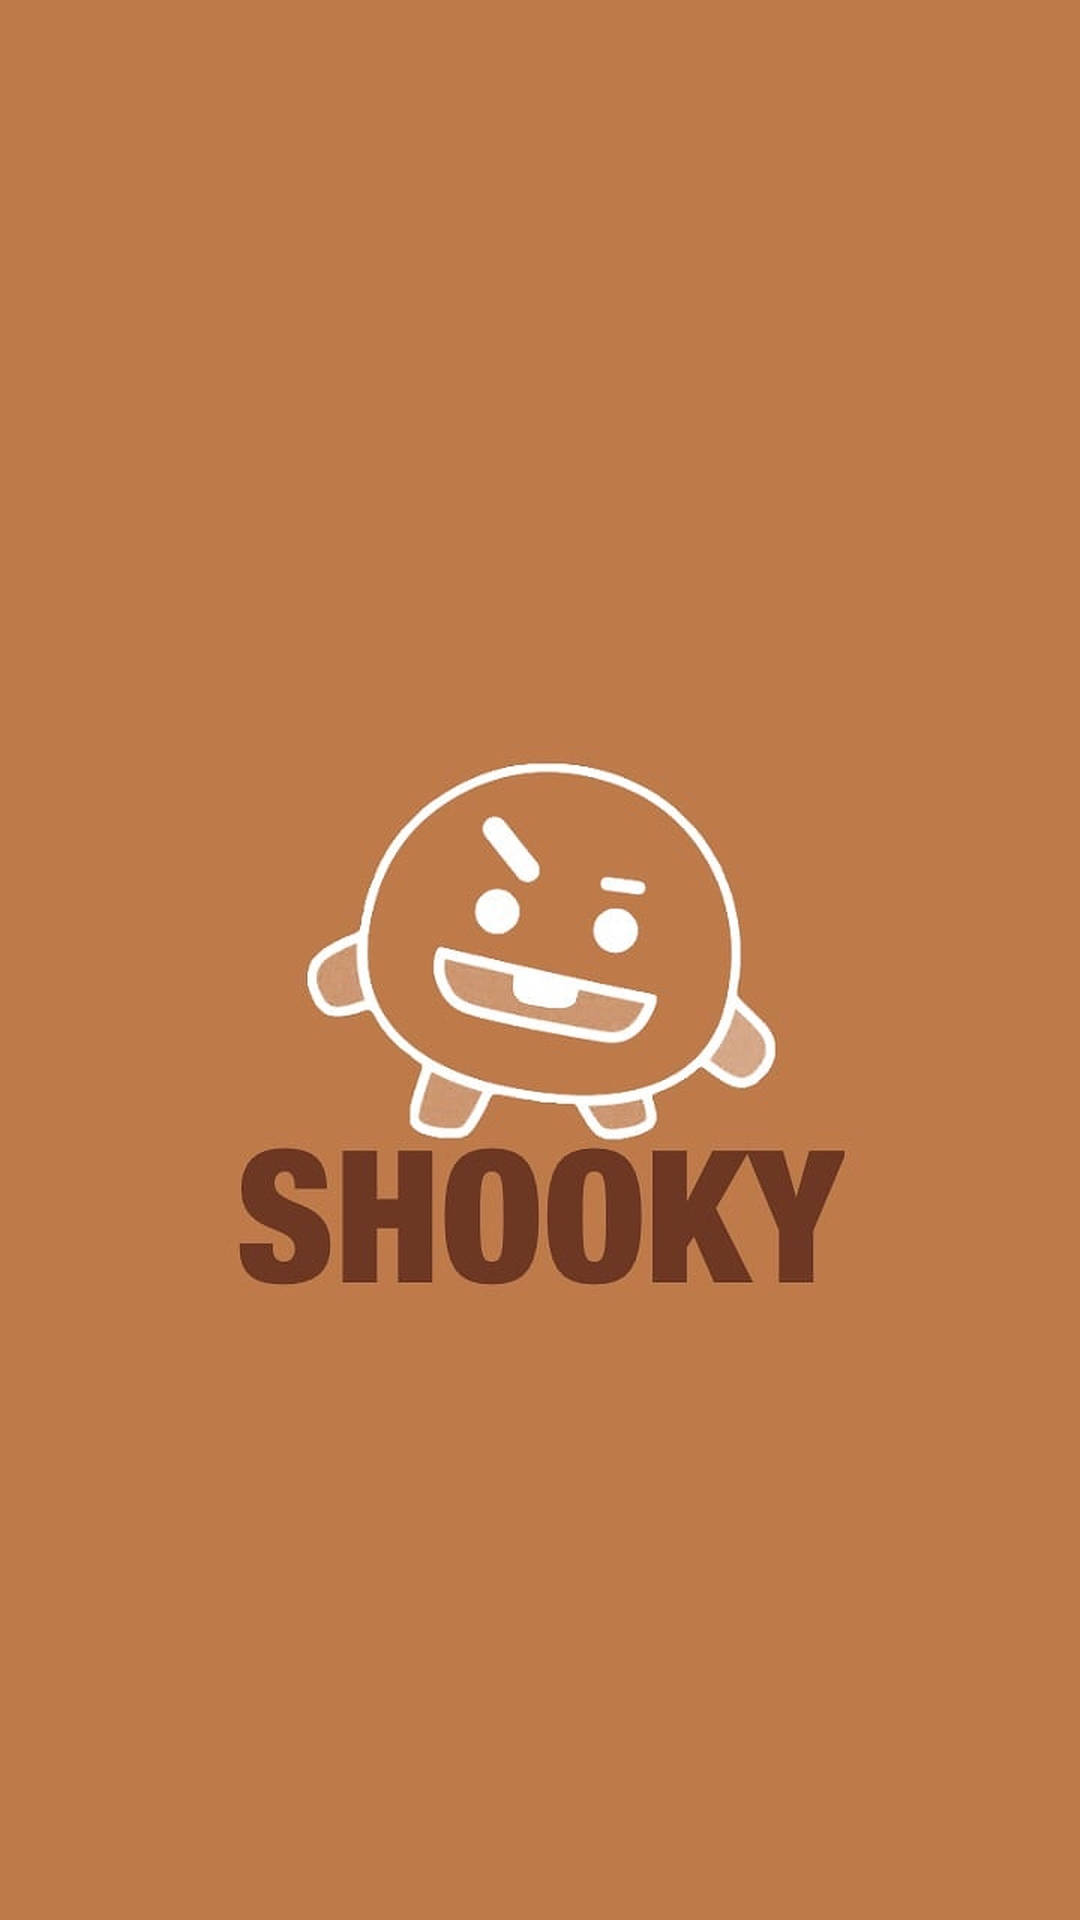 Shooky Bt21 Line Art